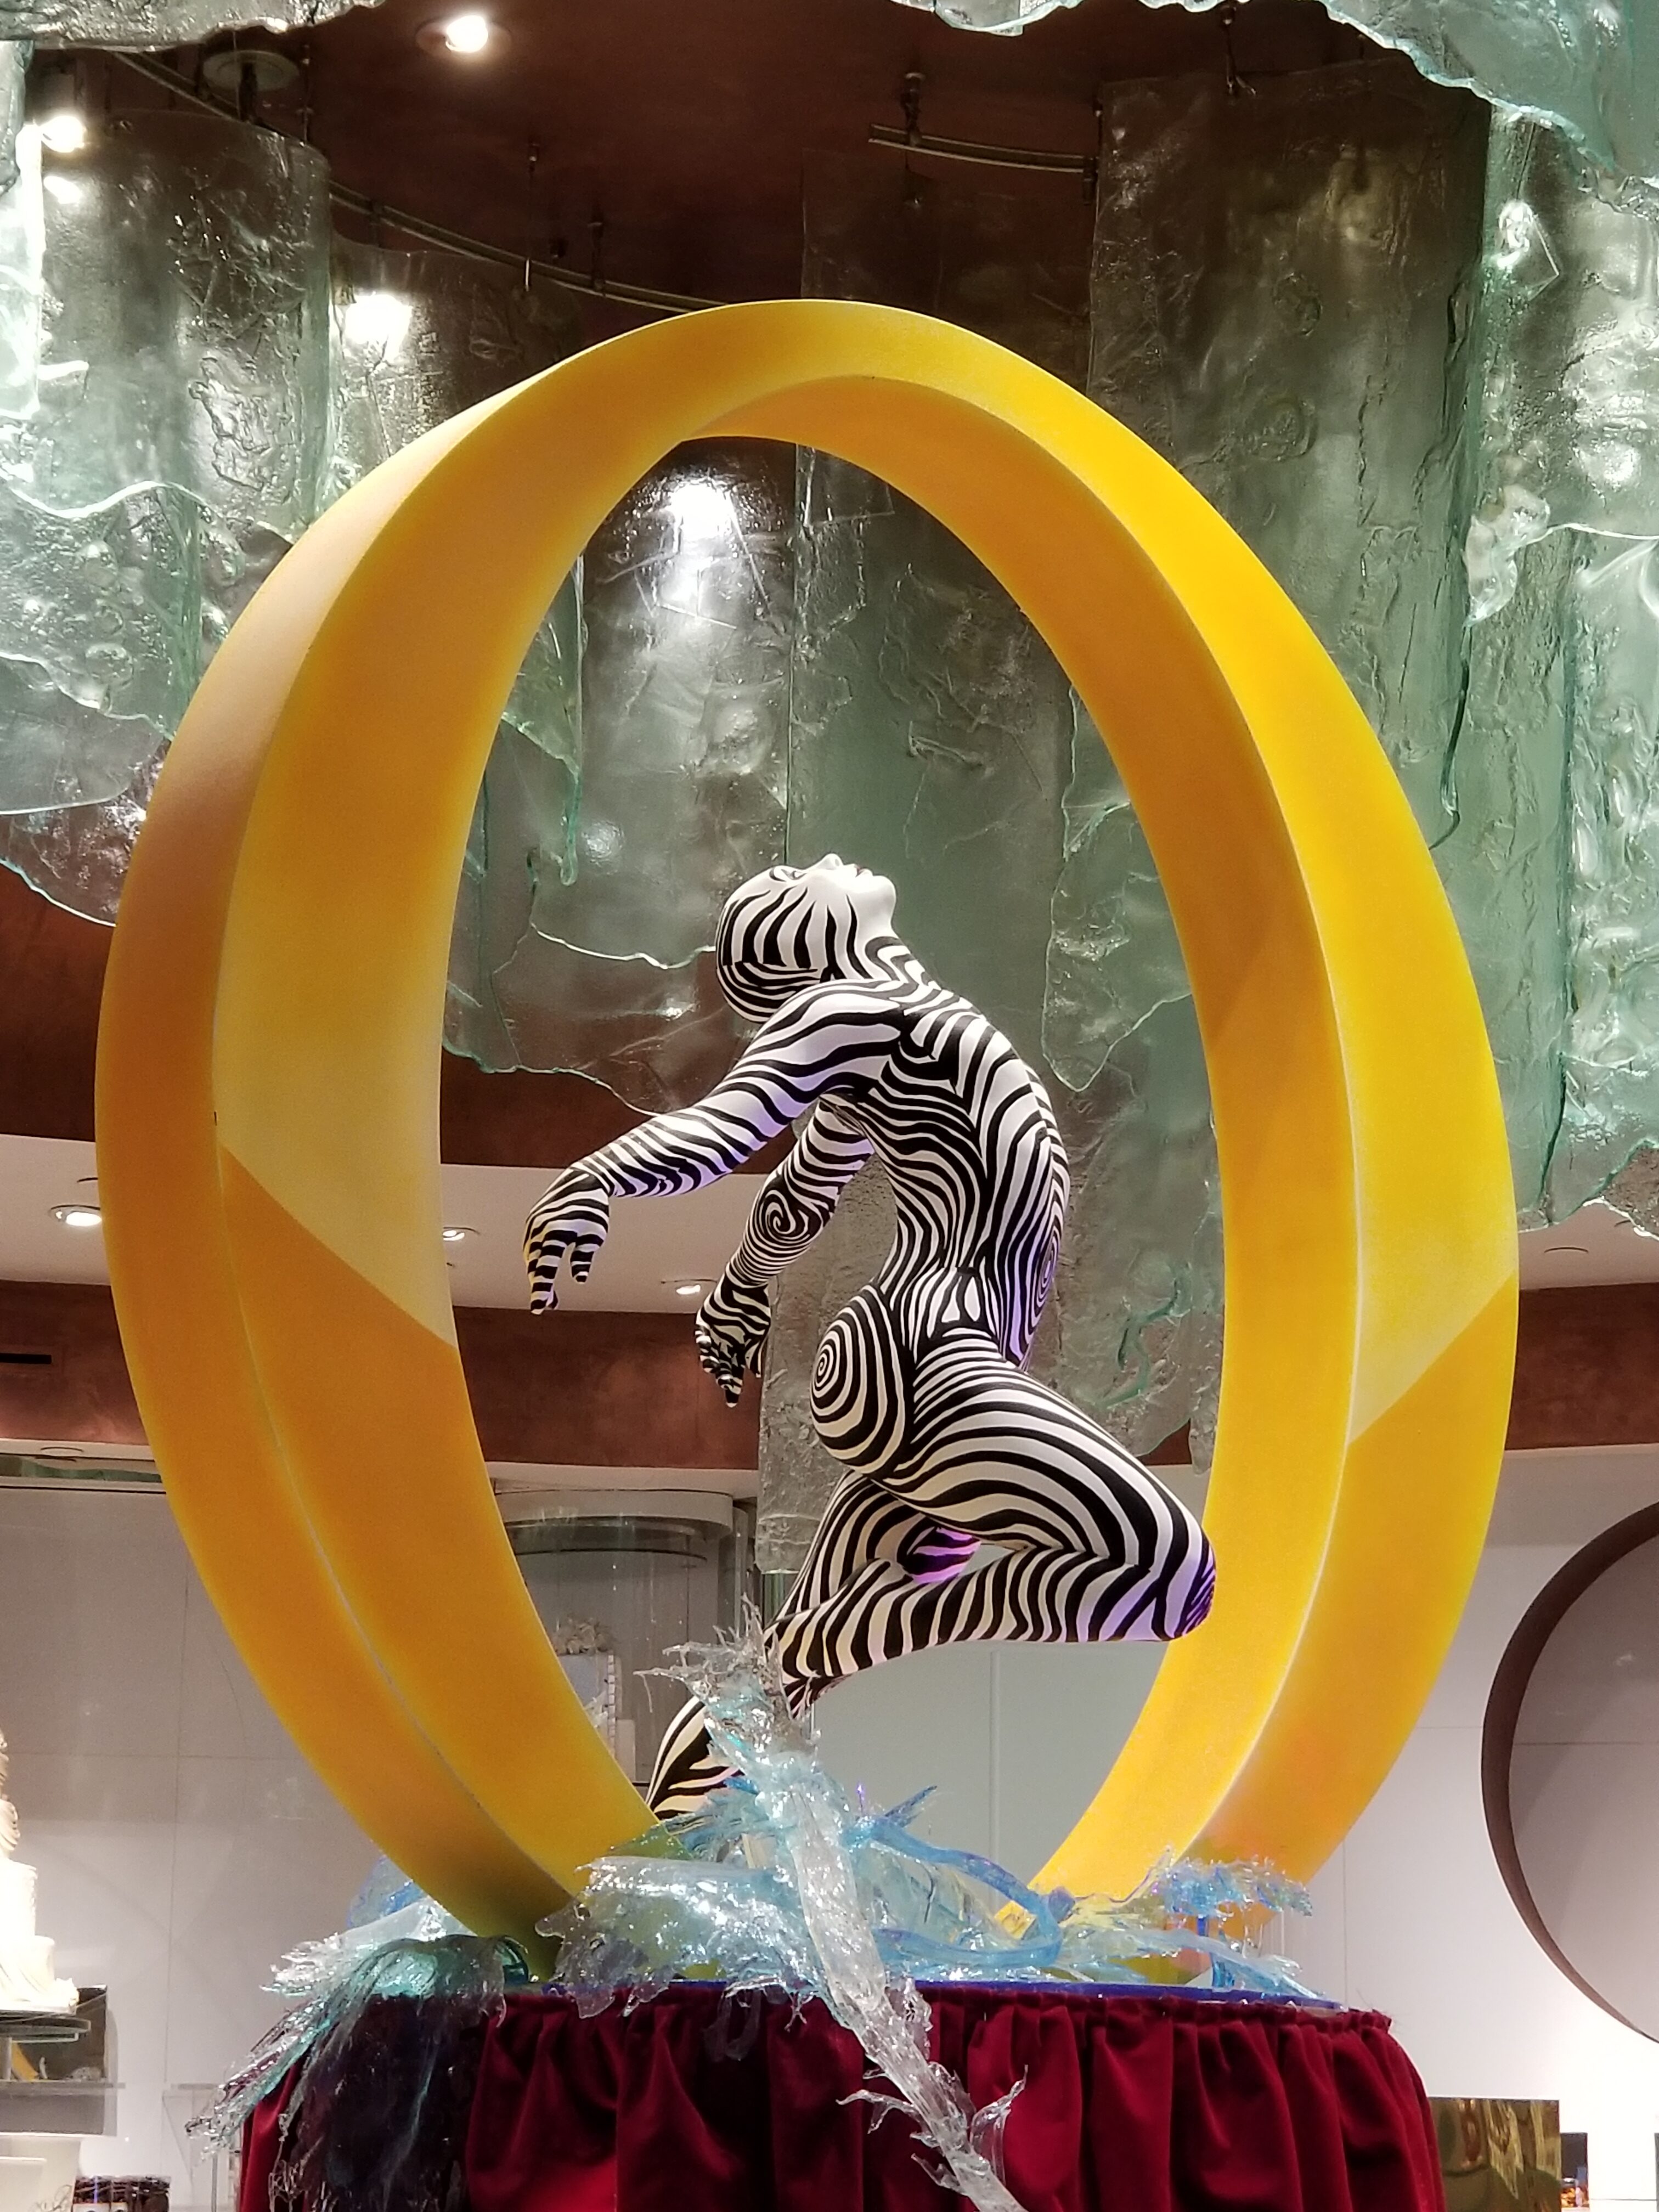 "O" by Cirque du Soleil - Bellagio